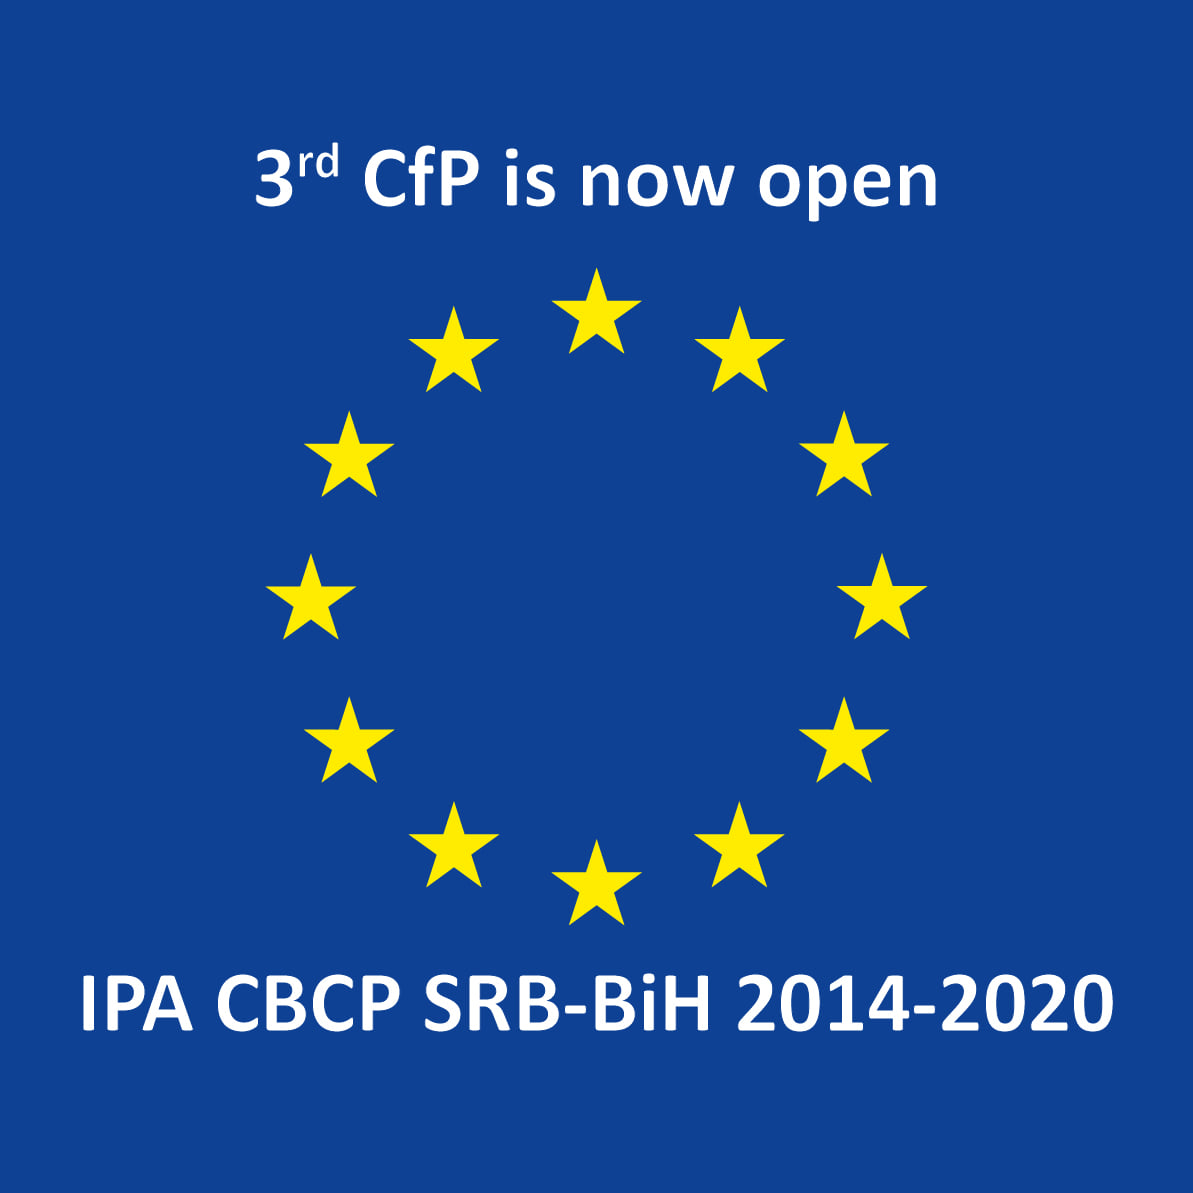 Објављен трећи позив за достављање предлога пројеката у оквиру ИПА Програма прекограничне сарадње Србија - Босна и Херцеговина 2014-2020